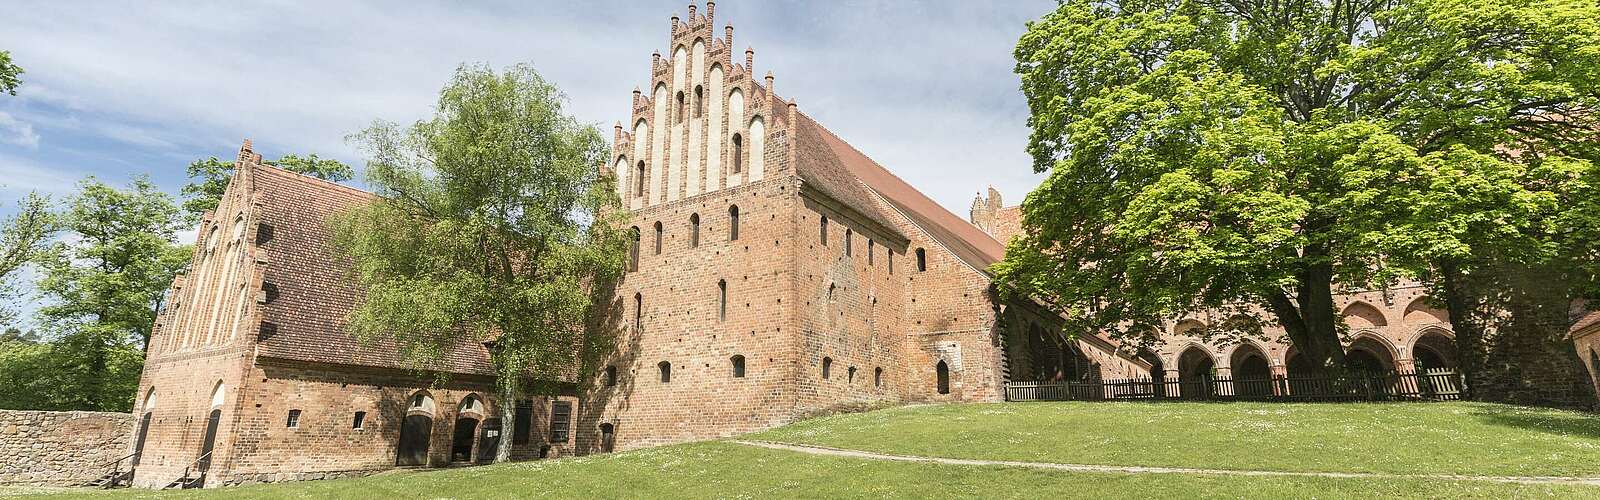 Kloster Chorin,
        
    

        Foto: TMB-Fotoarchiv/Steffen Lehmann